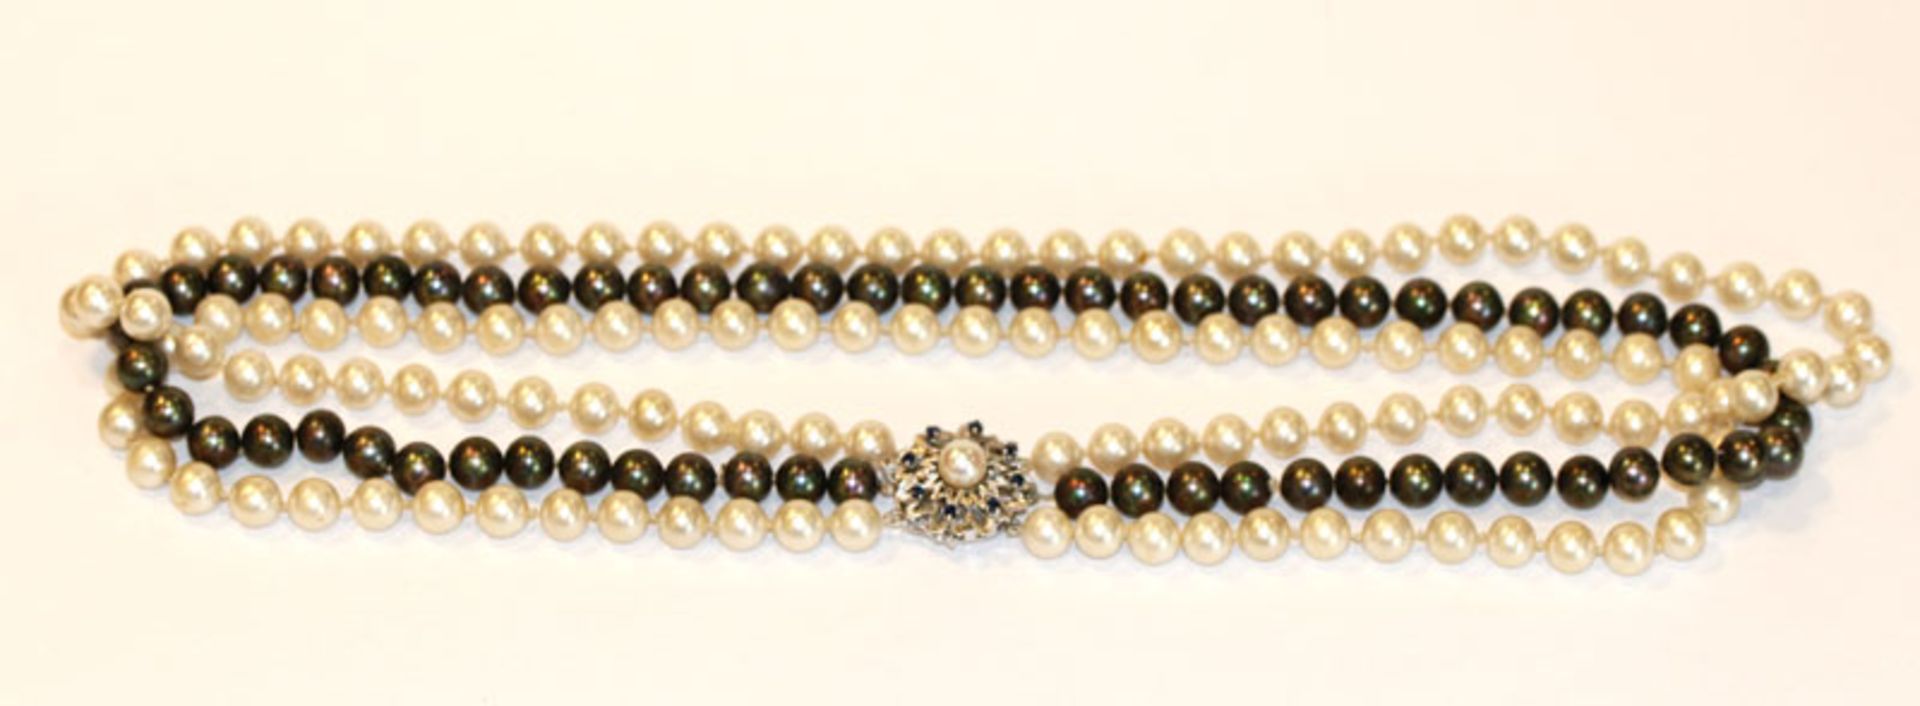 3-reihige Perlenkette, 2 weiße und 1 schwarzer Perlenstrang mit 14 k Weißgold-Schließe besetzt mit 8